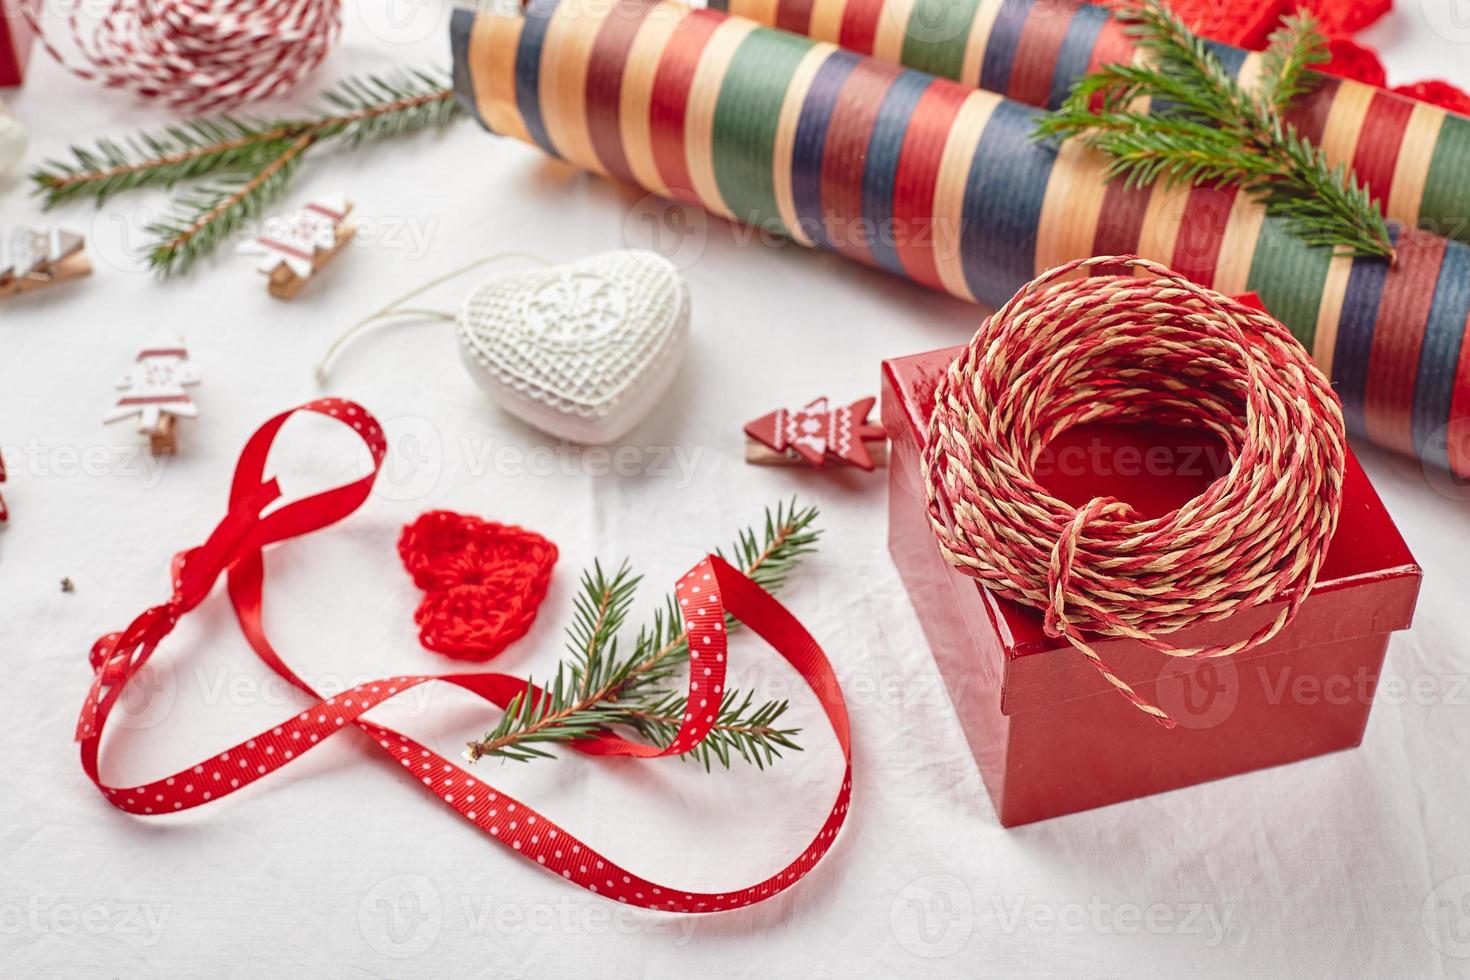 fondo de navidad con cajas de regalo, cinta, hilo, rollos de papel, corazones tejidos y adornos navideños. foto